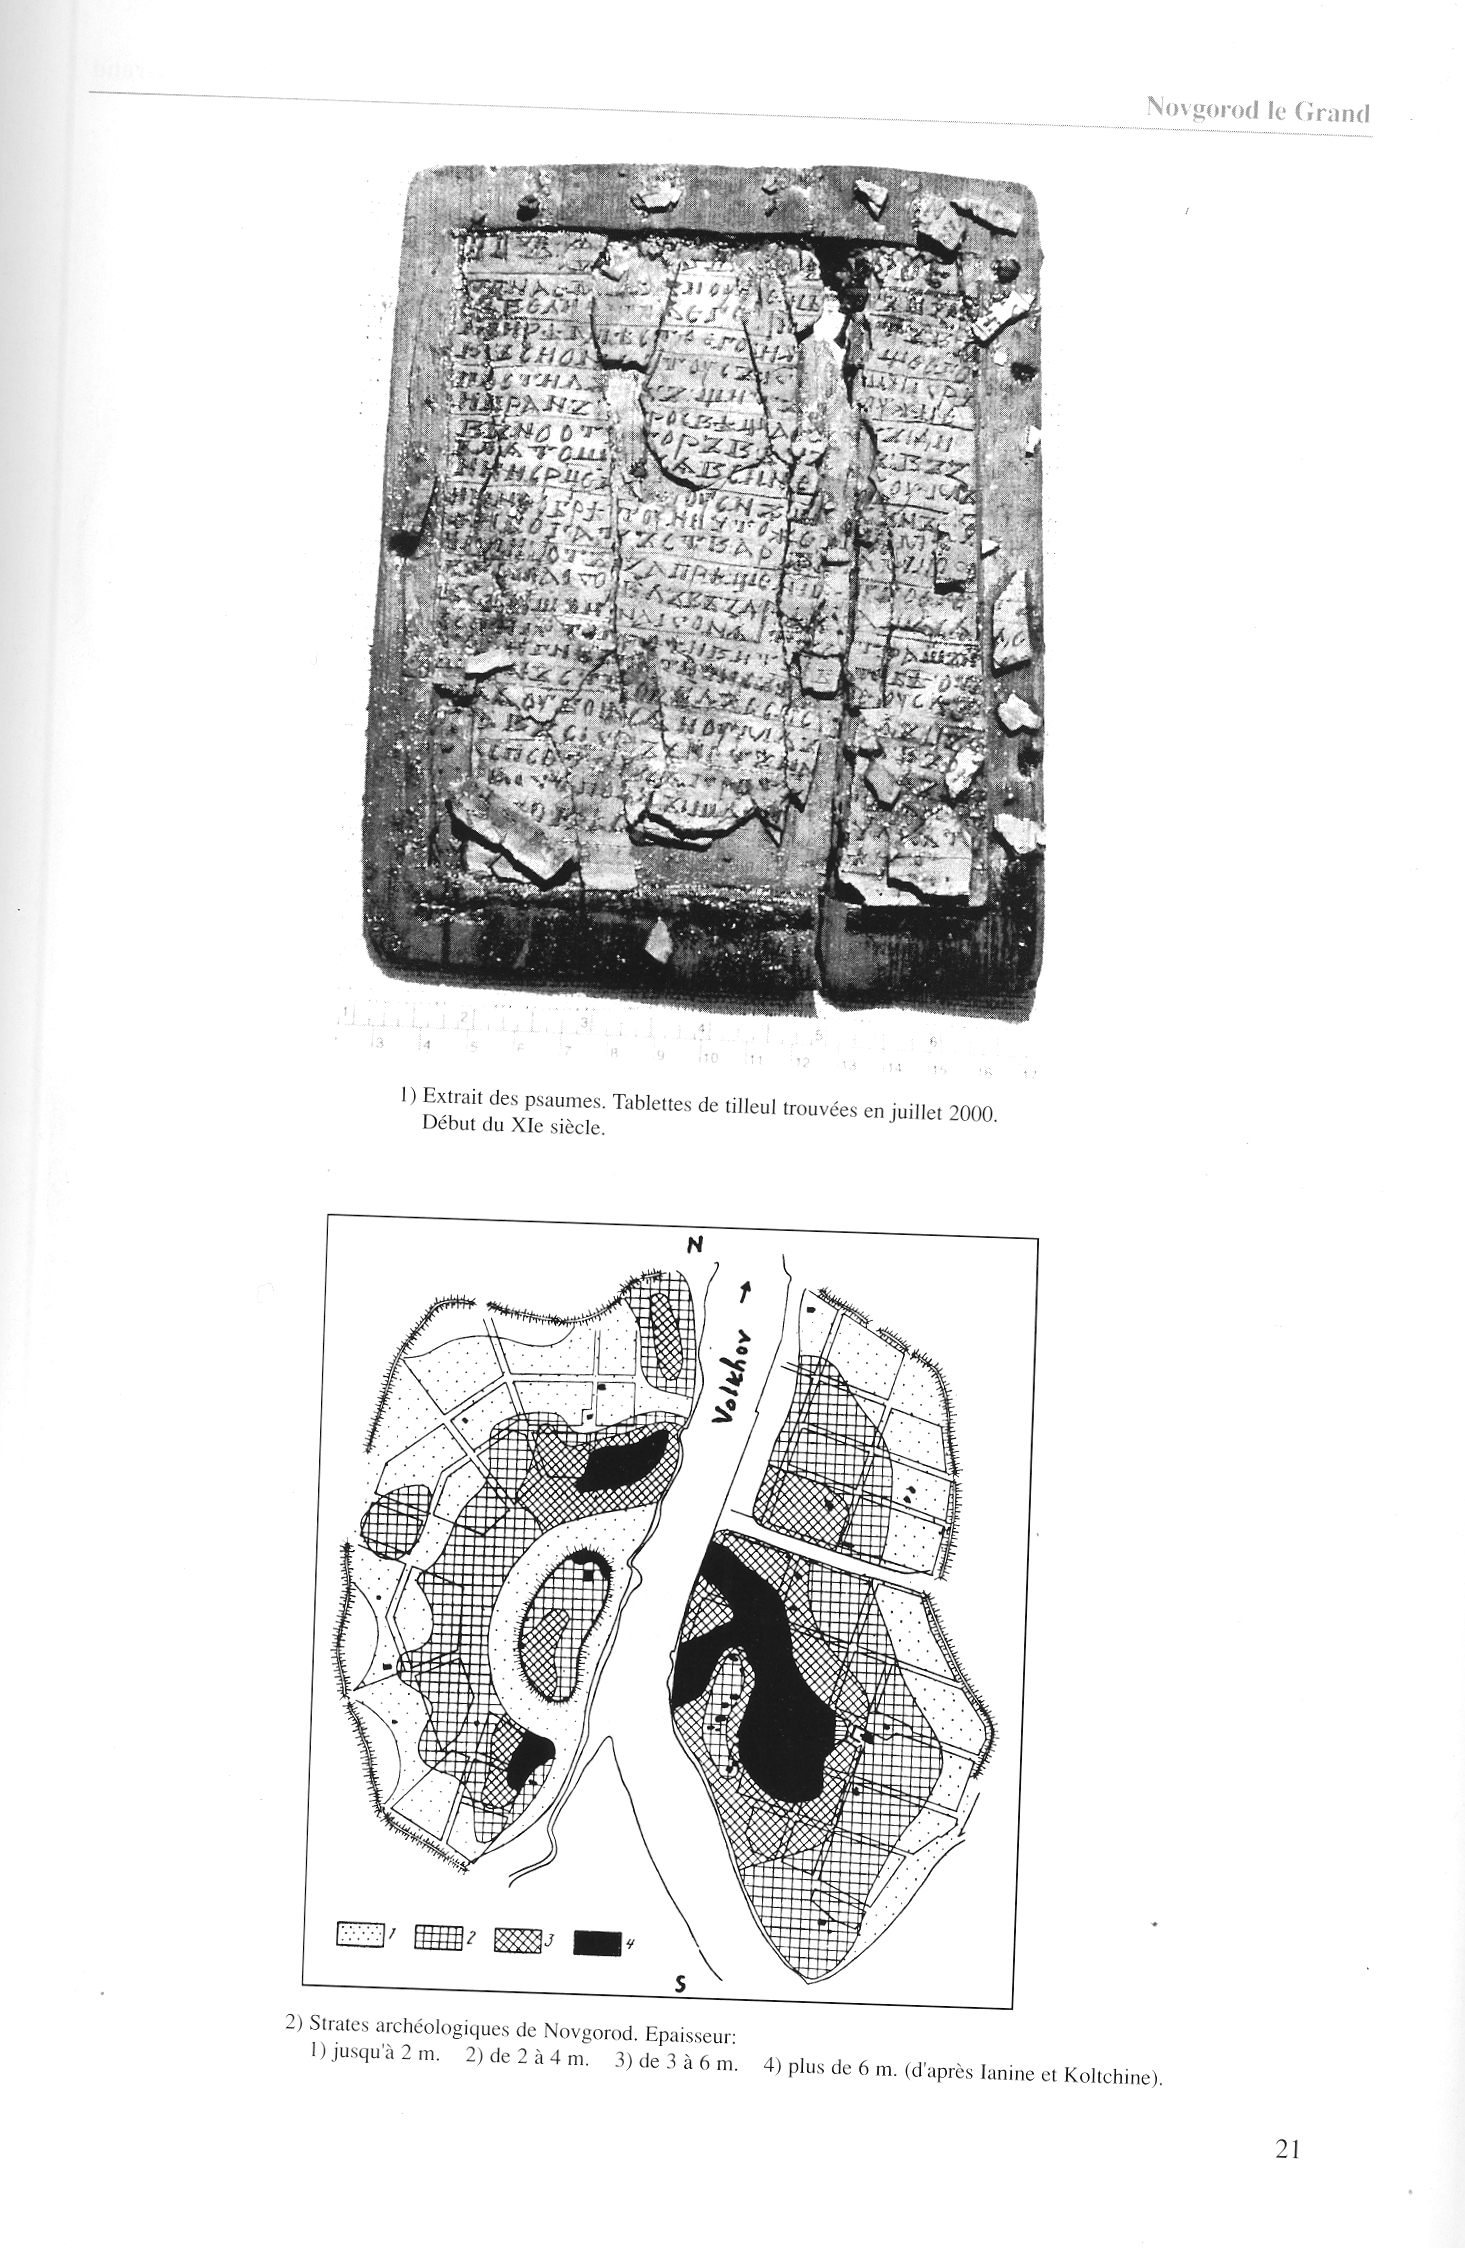 FPPR Revue 01 2002 23. Page 21. Extrait des psaumes sur tablettes de tilleul et Strates archéologique de Novgorod par Jean Blankoff